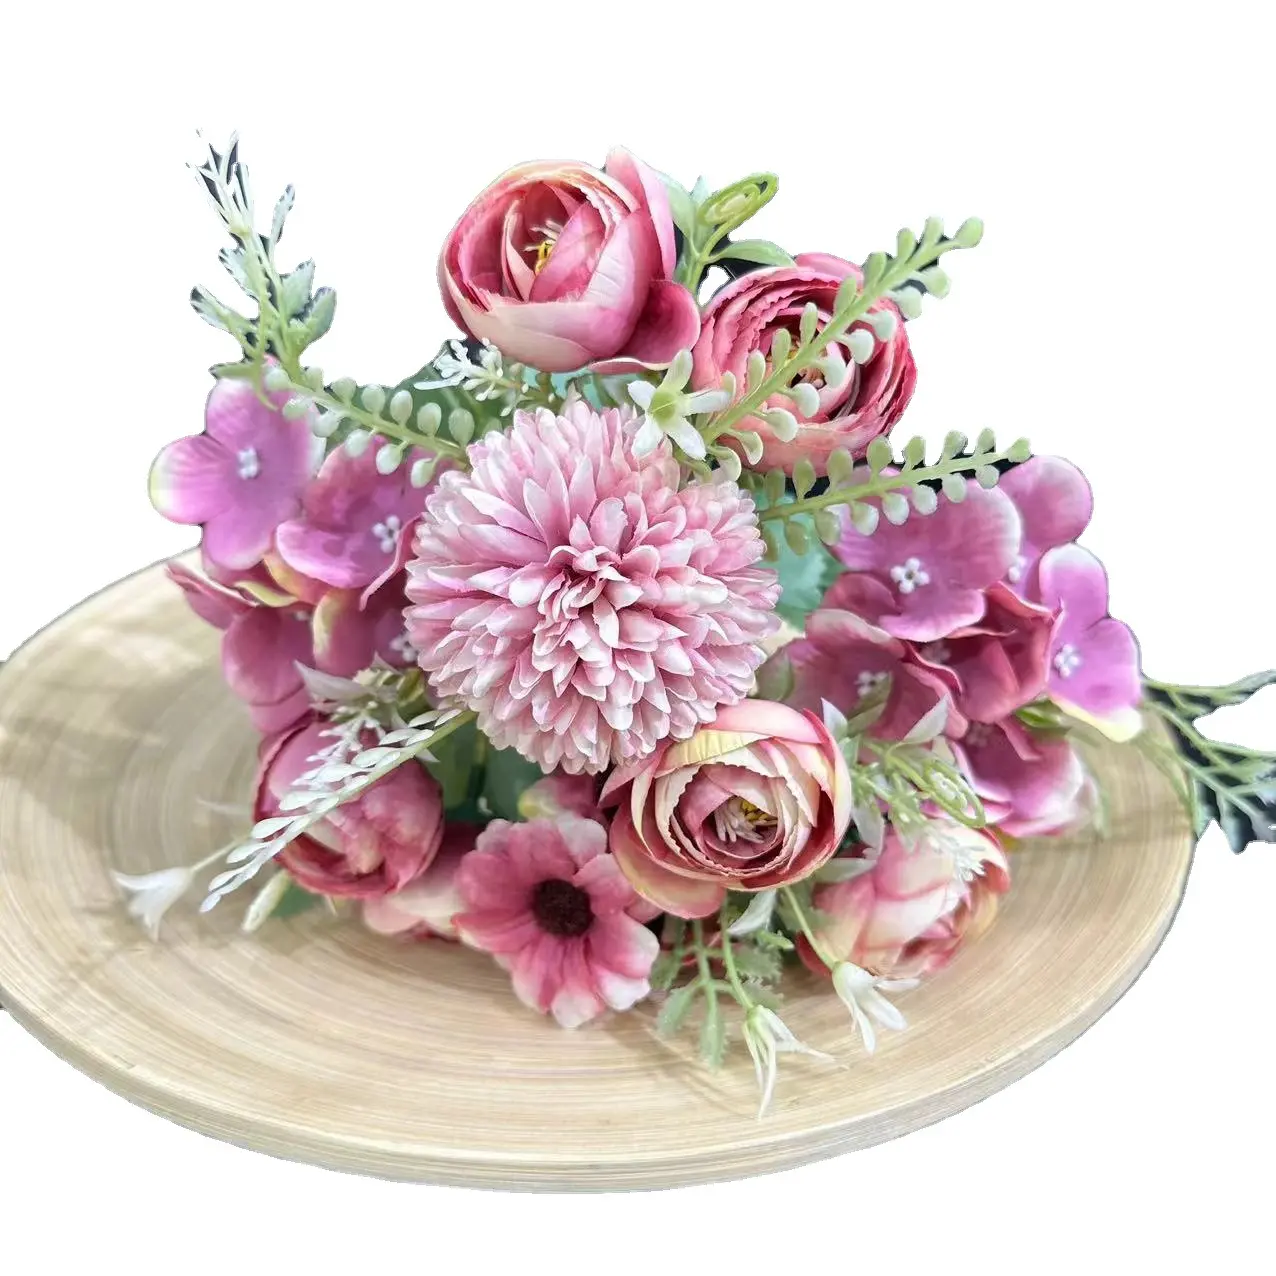 SAISON Décoration De Mariage Rose Hortensia Fleur Mariée Bouquet En Gros Soie Artificielle Fleur Bush